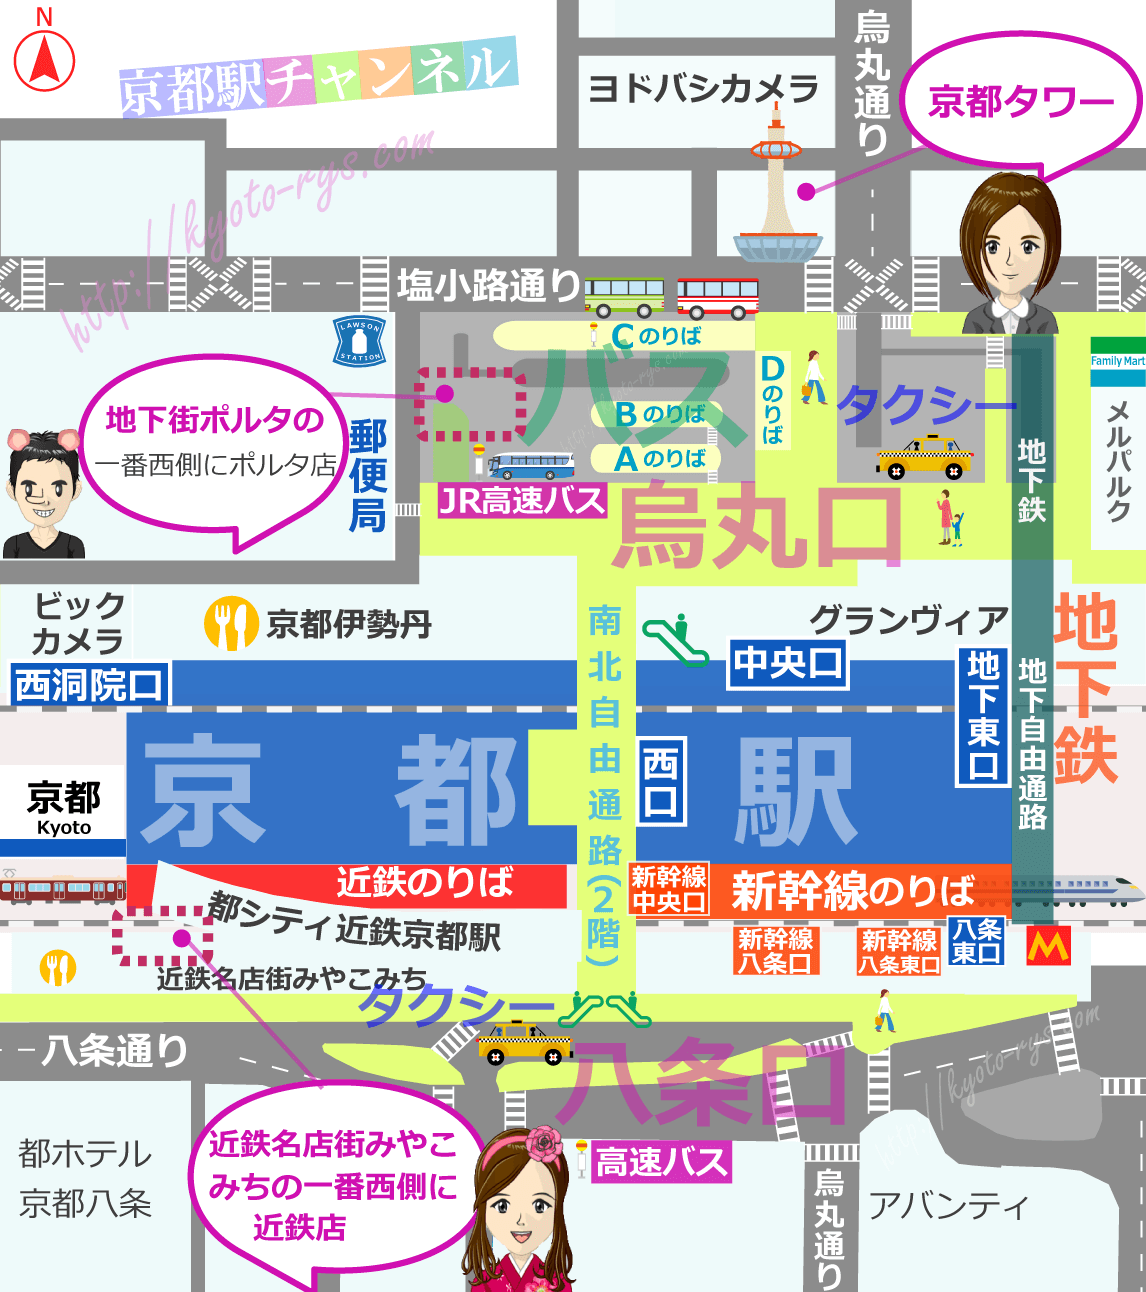 京都駅の地図